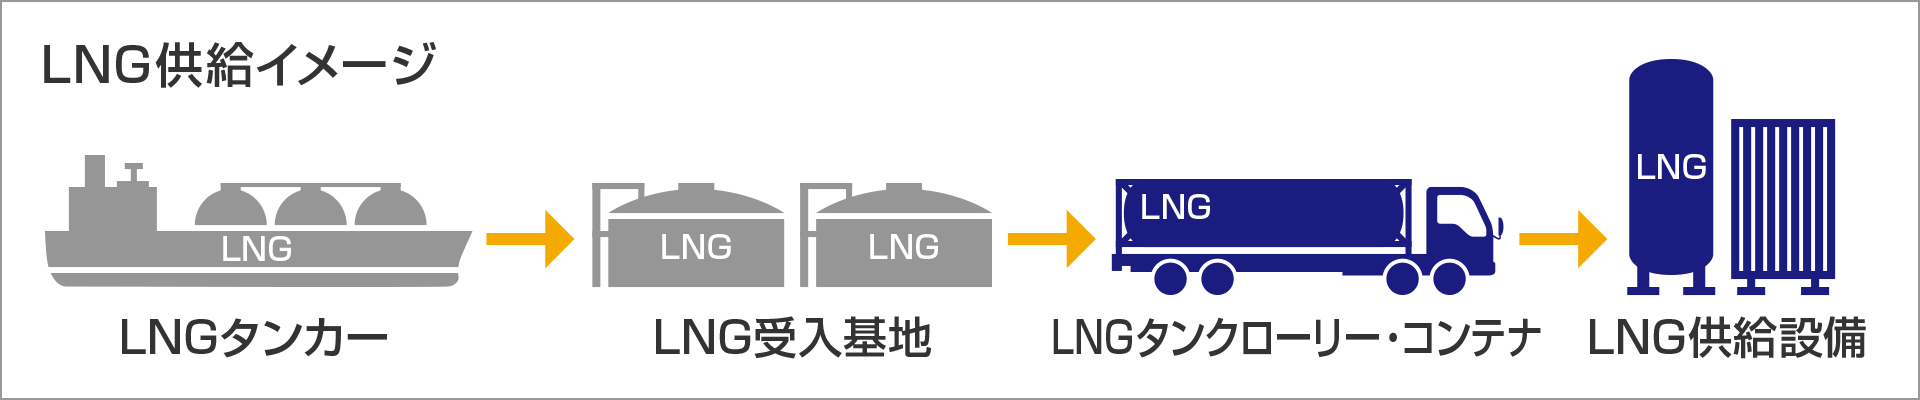 LNG供給イメージ